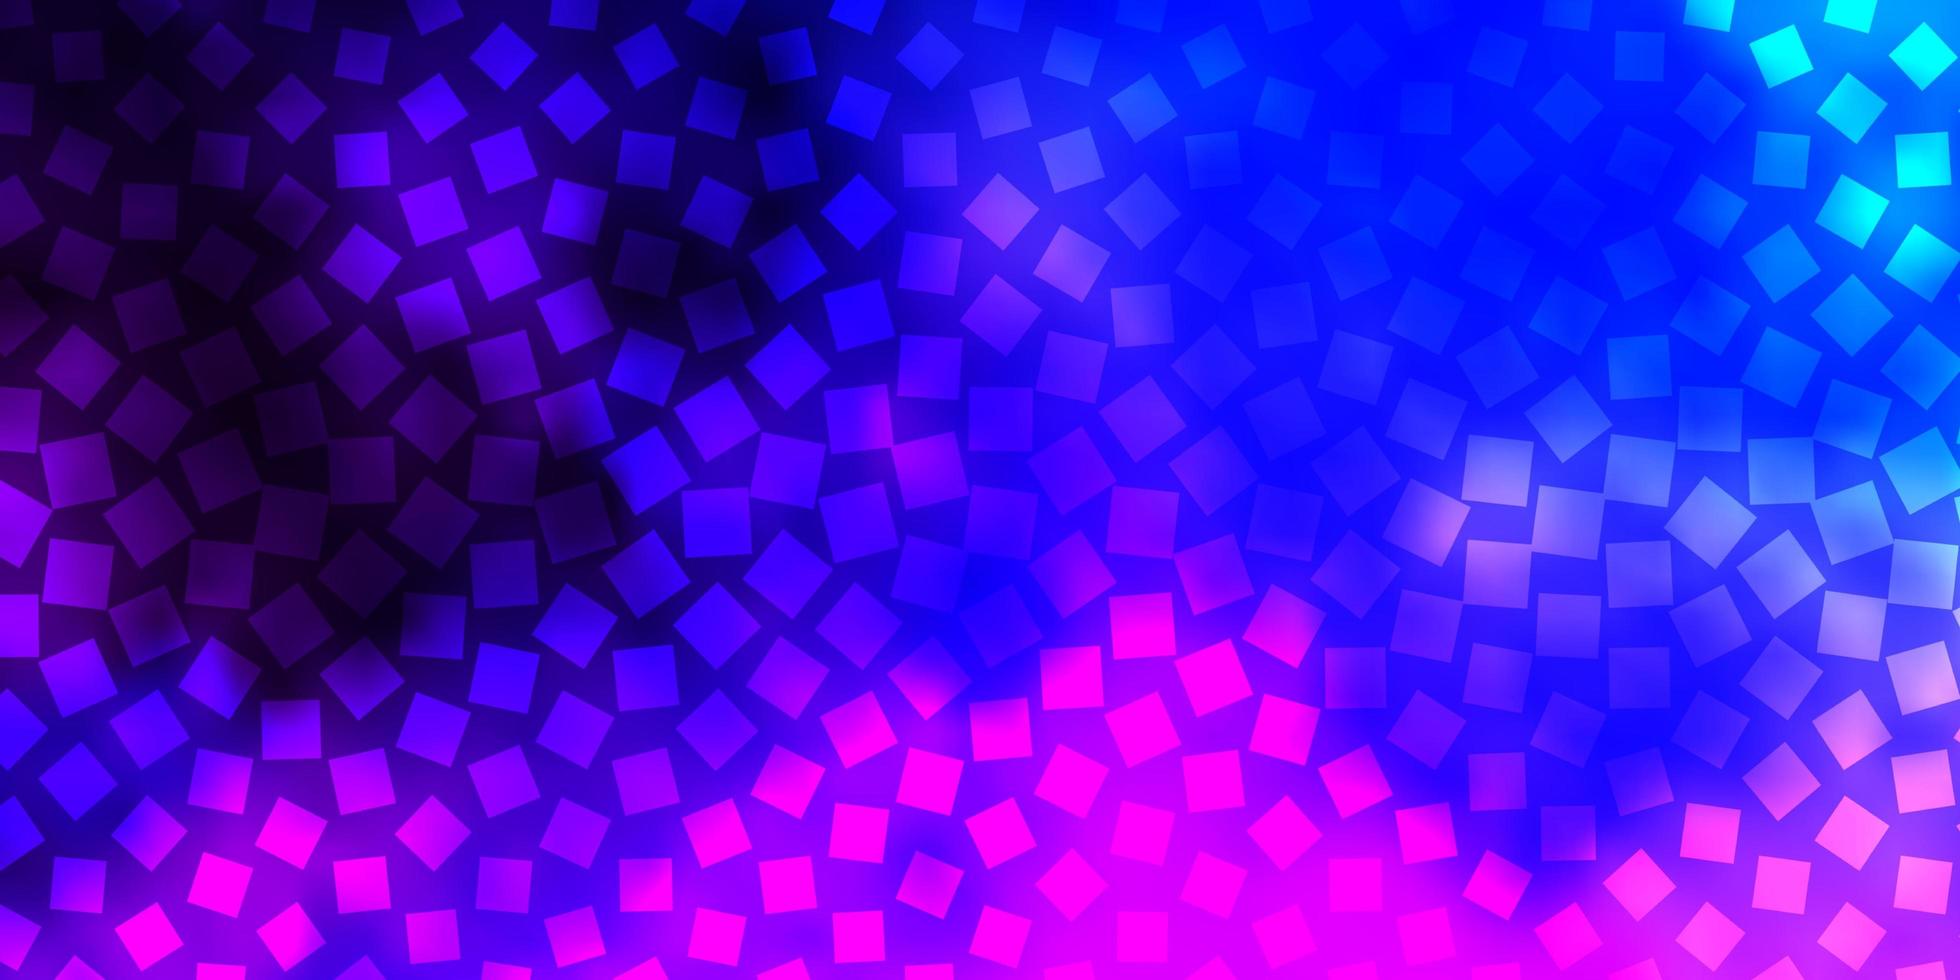 sfondo vettoriale rosa scuro, blu in stile poligonale.